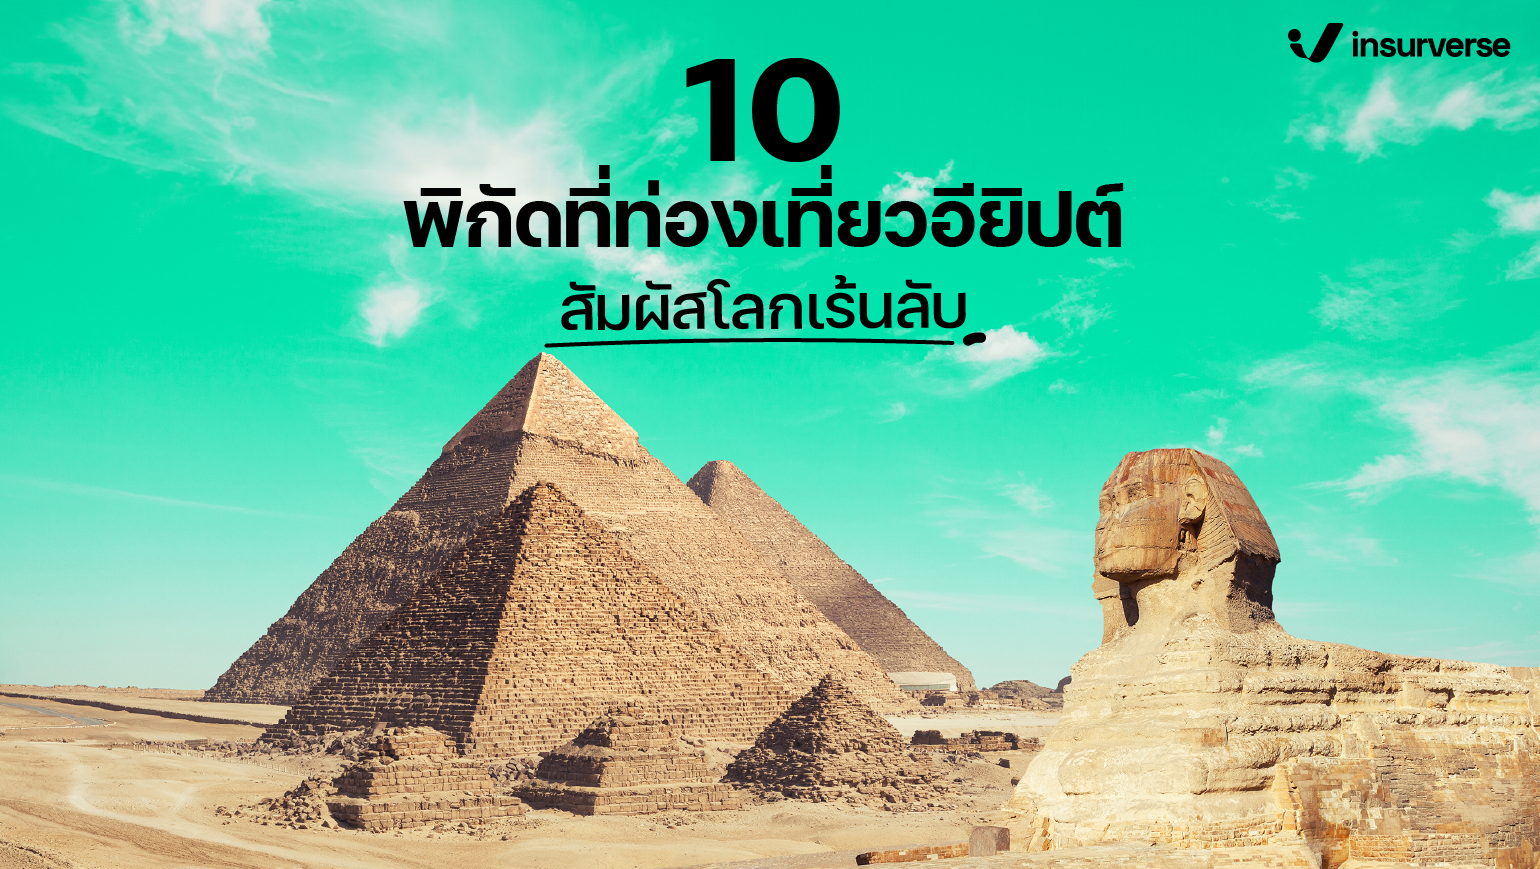 แนะนำ 7 ที่เที่ยวอียิปต์ที่มีความน่าสนใจ เหมาะแก่การสำรวจความลึกลับ